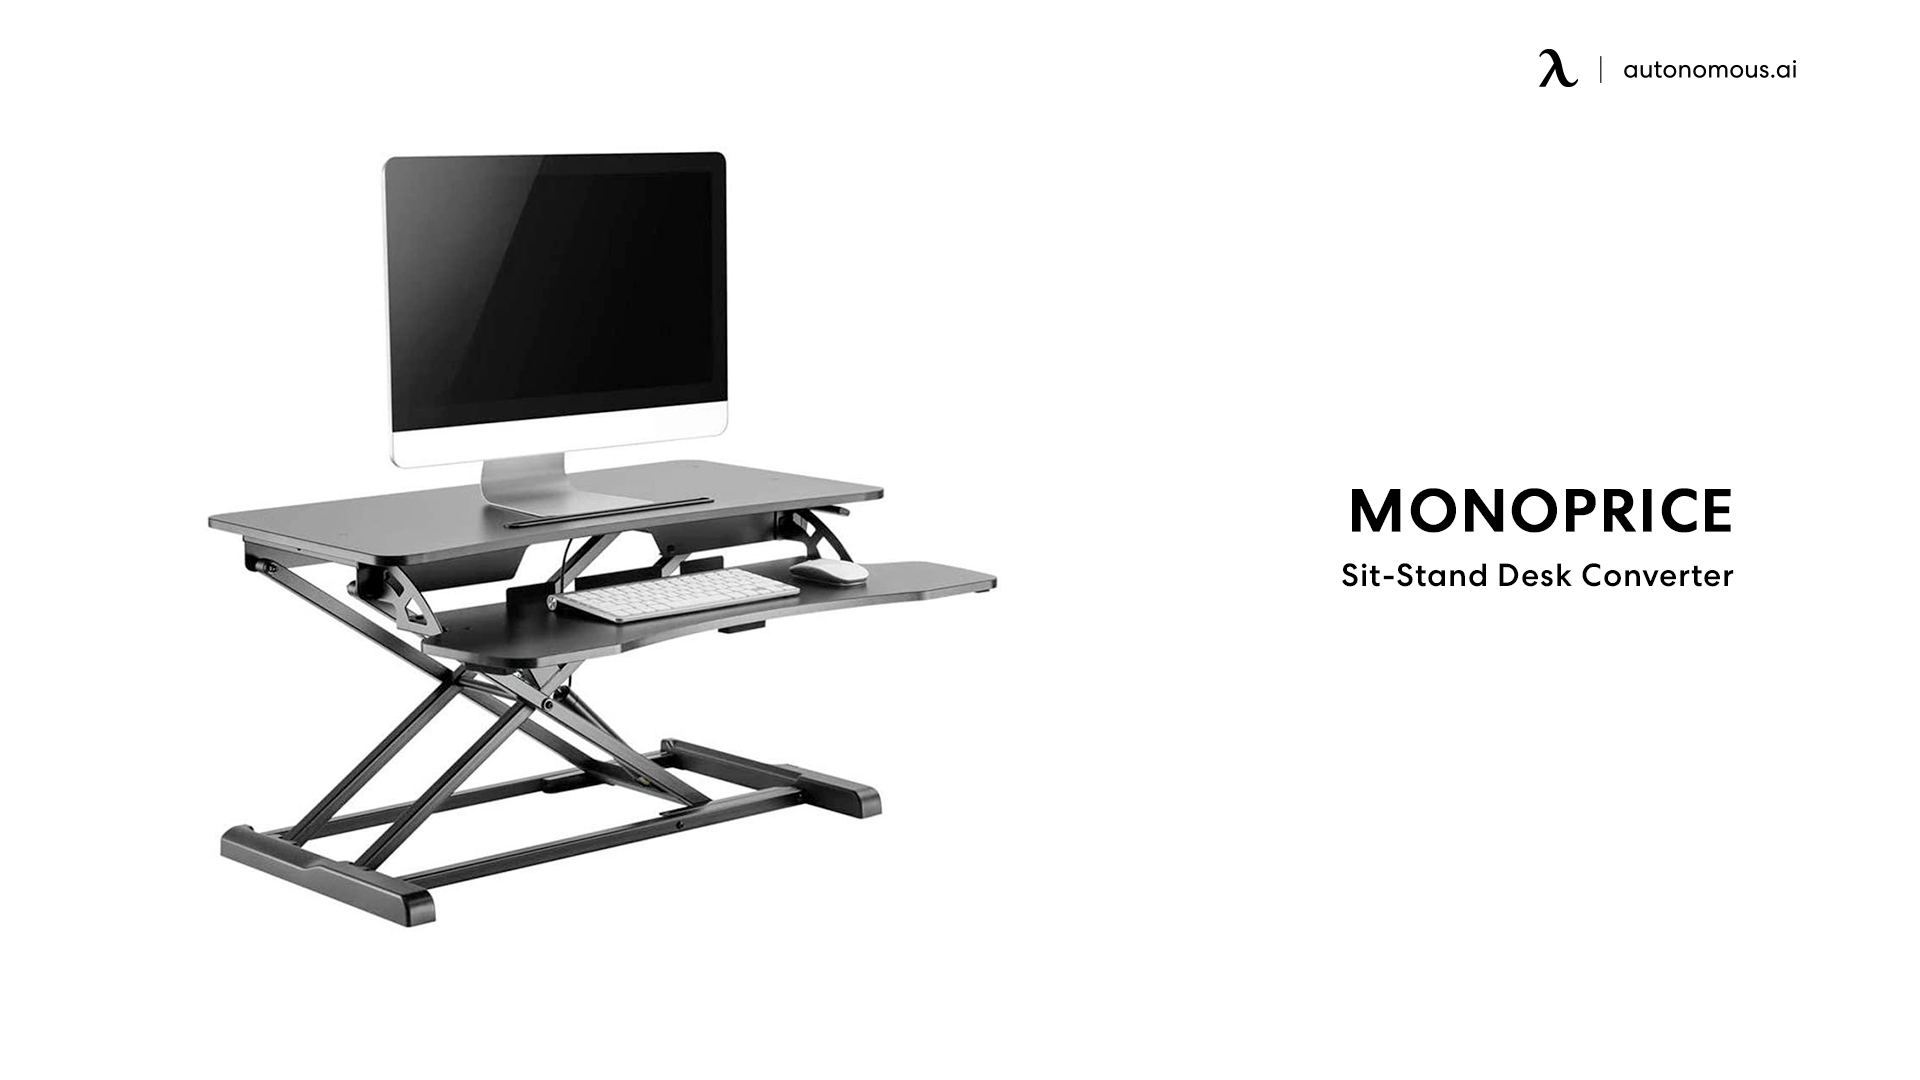 Monoprice sit-stand workstation desktop